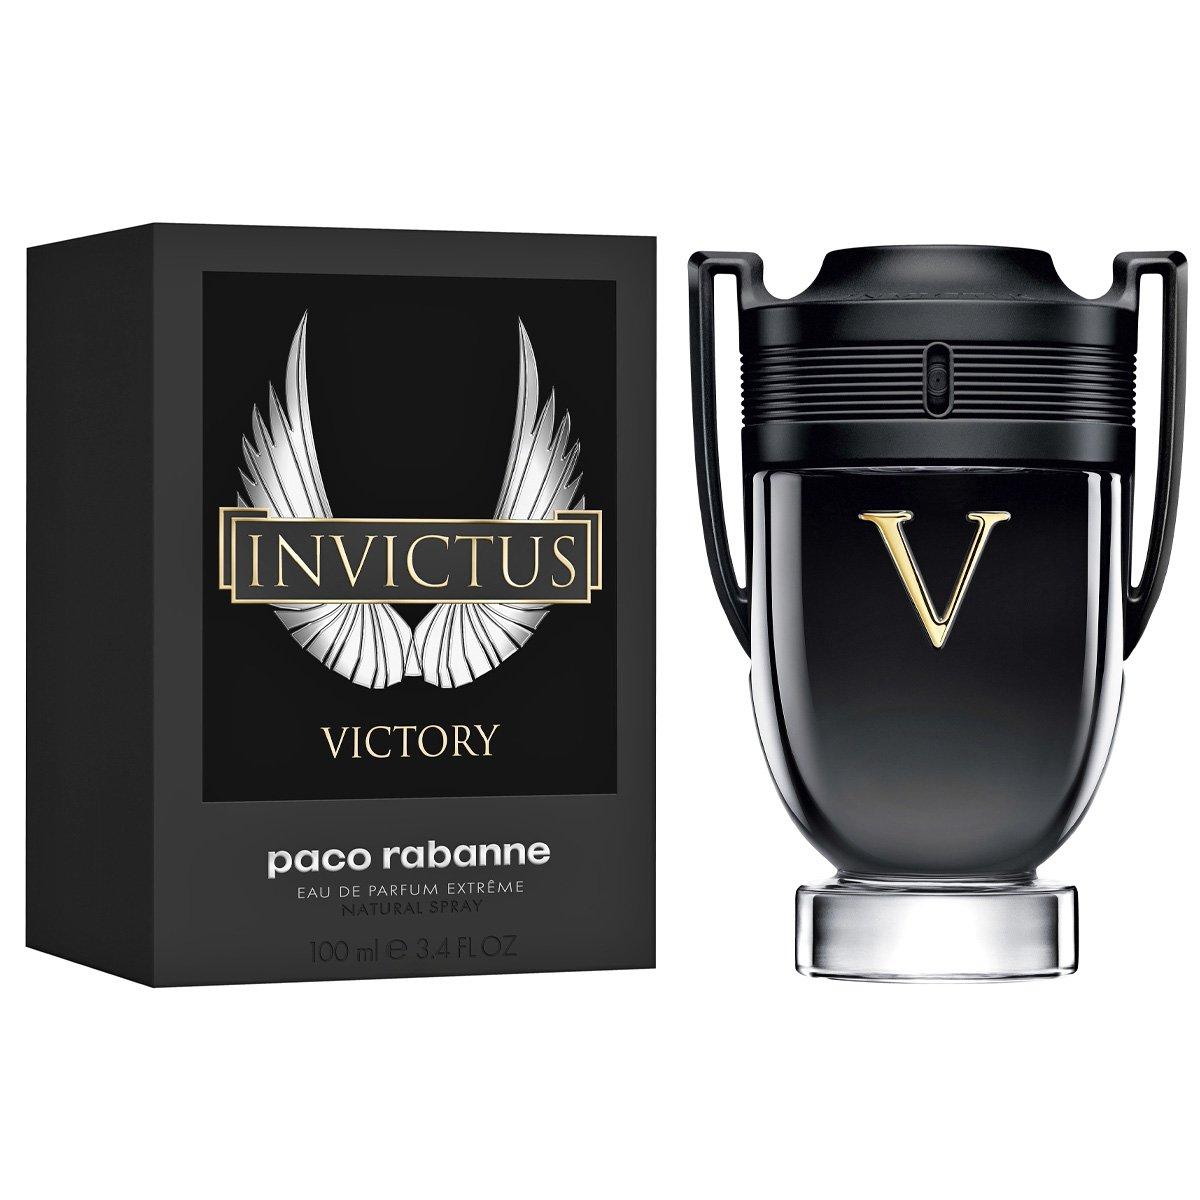 Paco Rabanne Invictus Victory Парфюмерная вода для мужчин (100 ml) (копия) Пако Рабан Инвиктус Виктори Победа